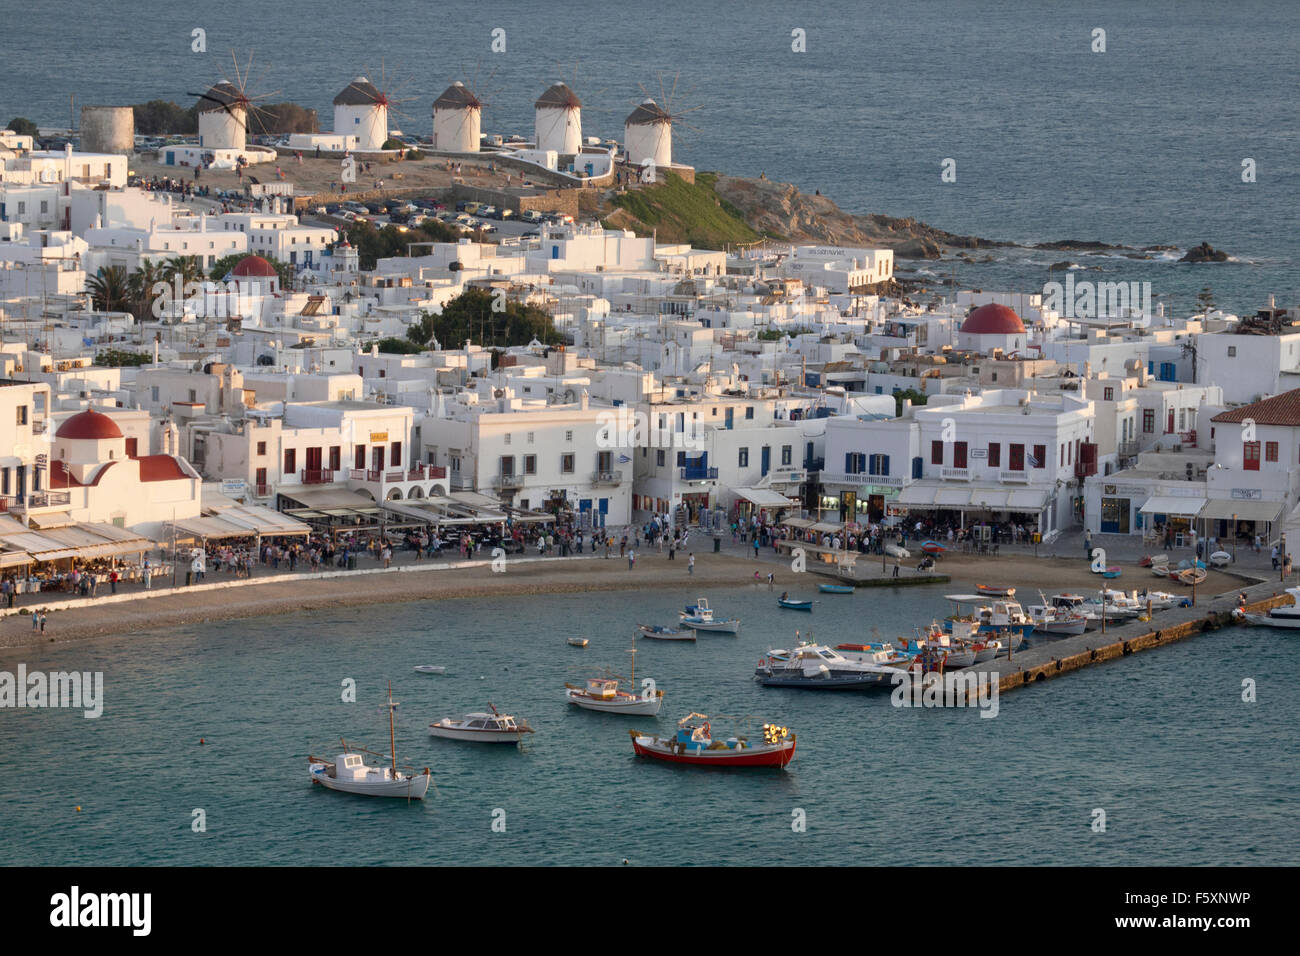 Porto di Mykonos, città e mulini a vento nel Mar Mediterraneo, isole greche Foto Stock